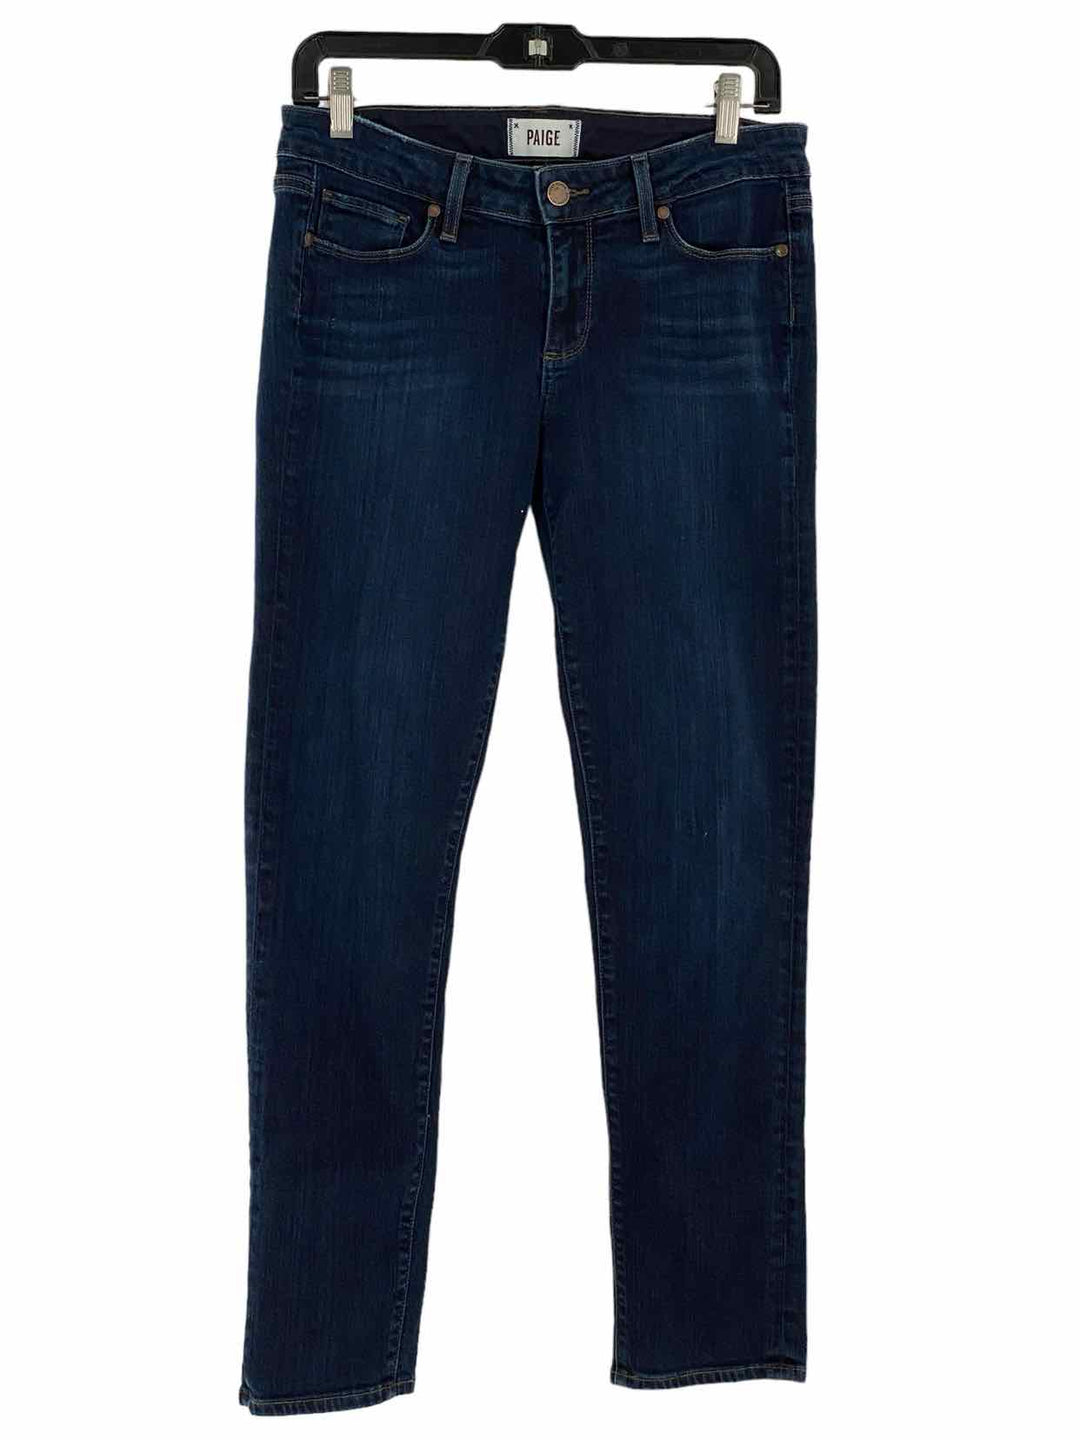 Paige Size 29 Blue Denim Jeans